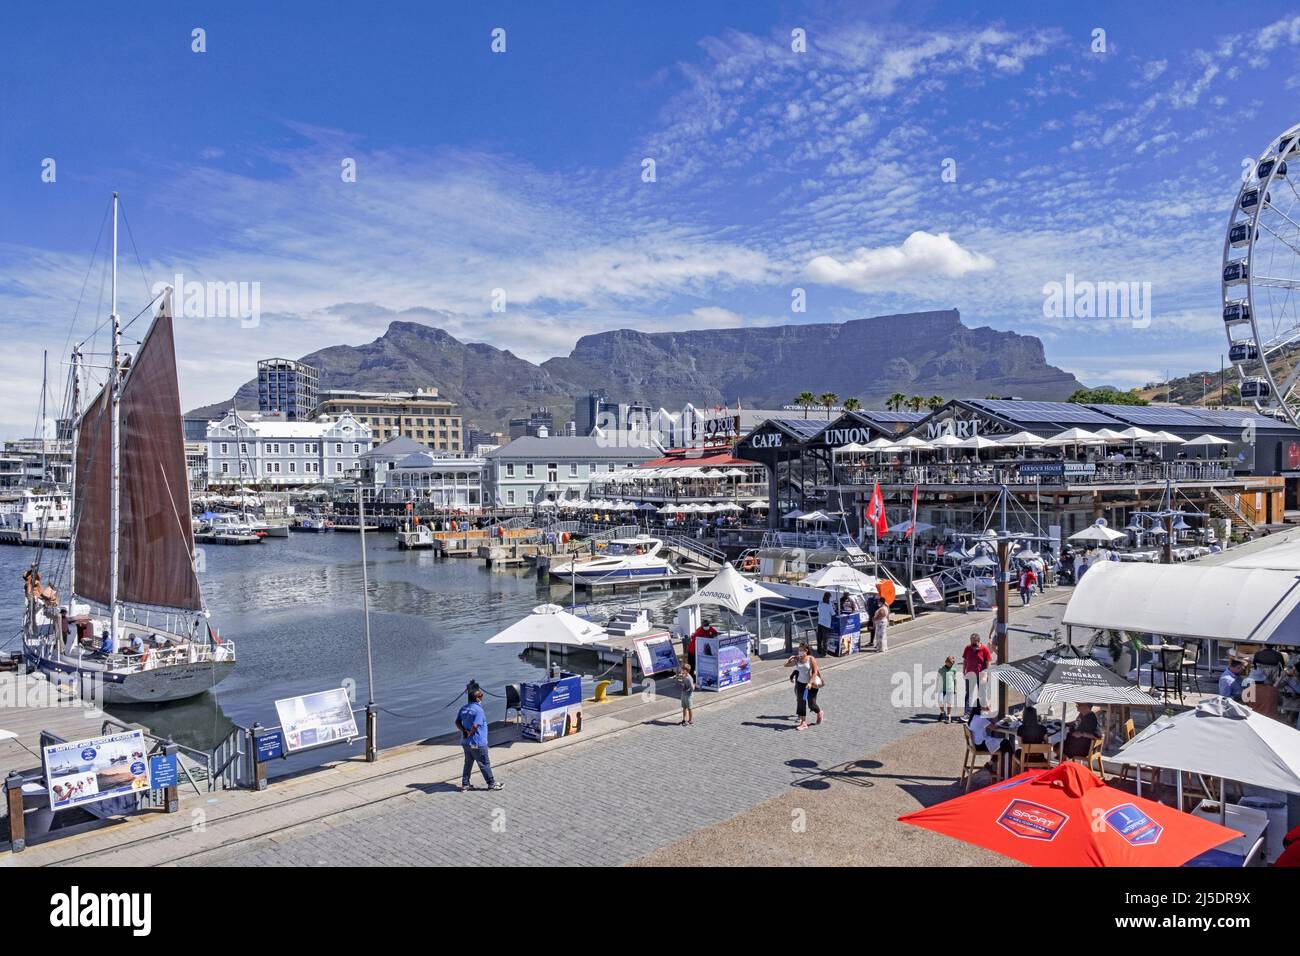 Victoria & Alfred (V&A) Hafen am Wasser entlang der Table Bay und dem Tafelberg in Kapstadt / Kaapstad, Western Cape Province, Südafrika Stockfoto